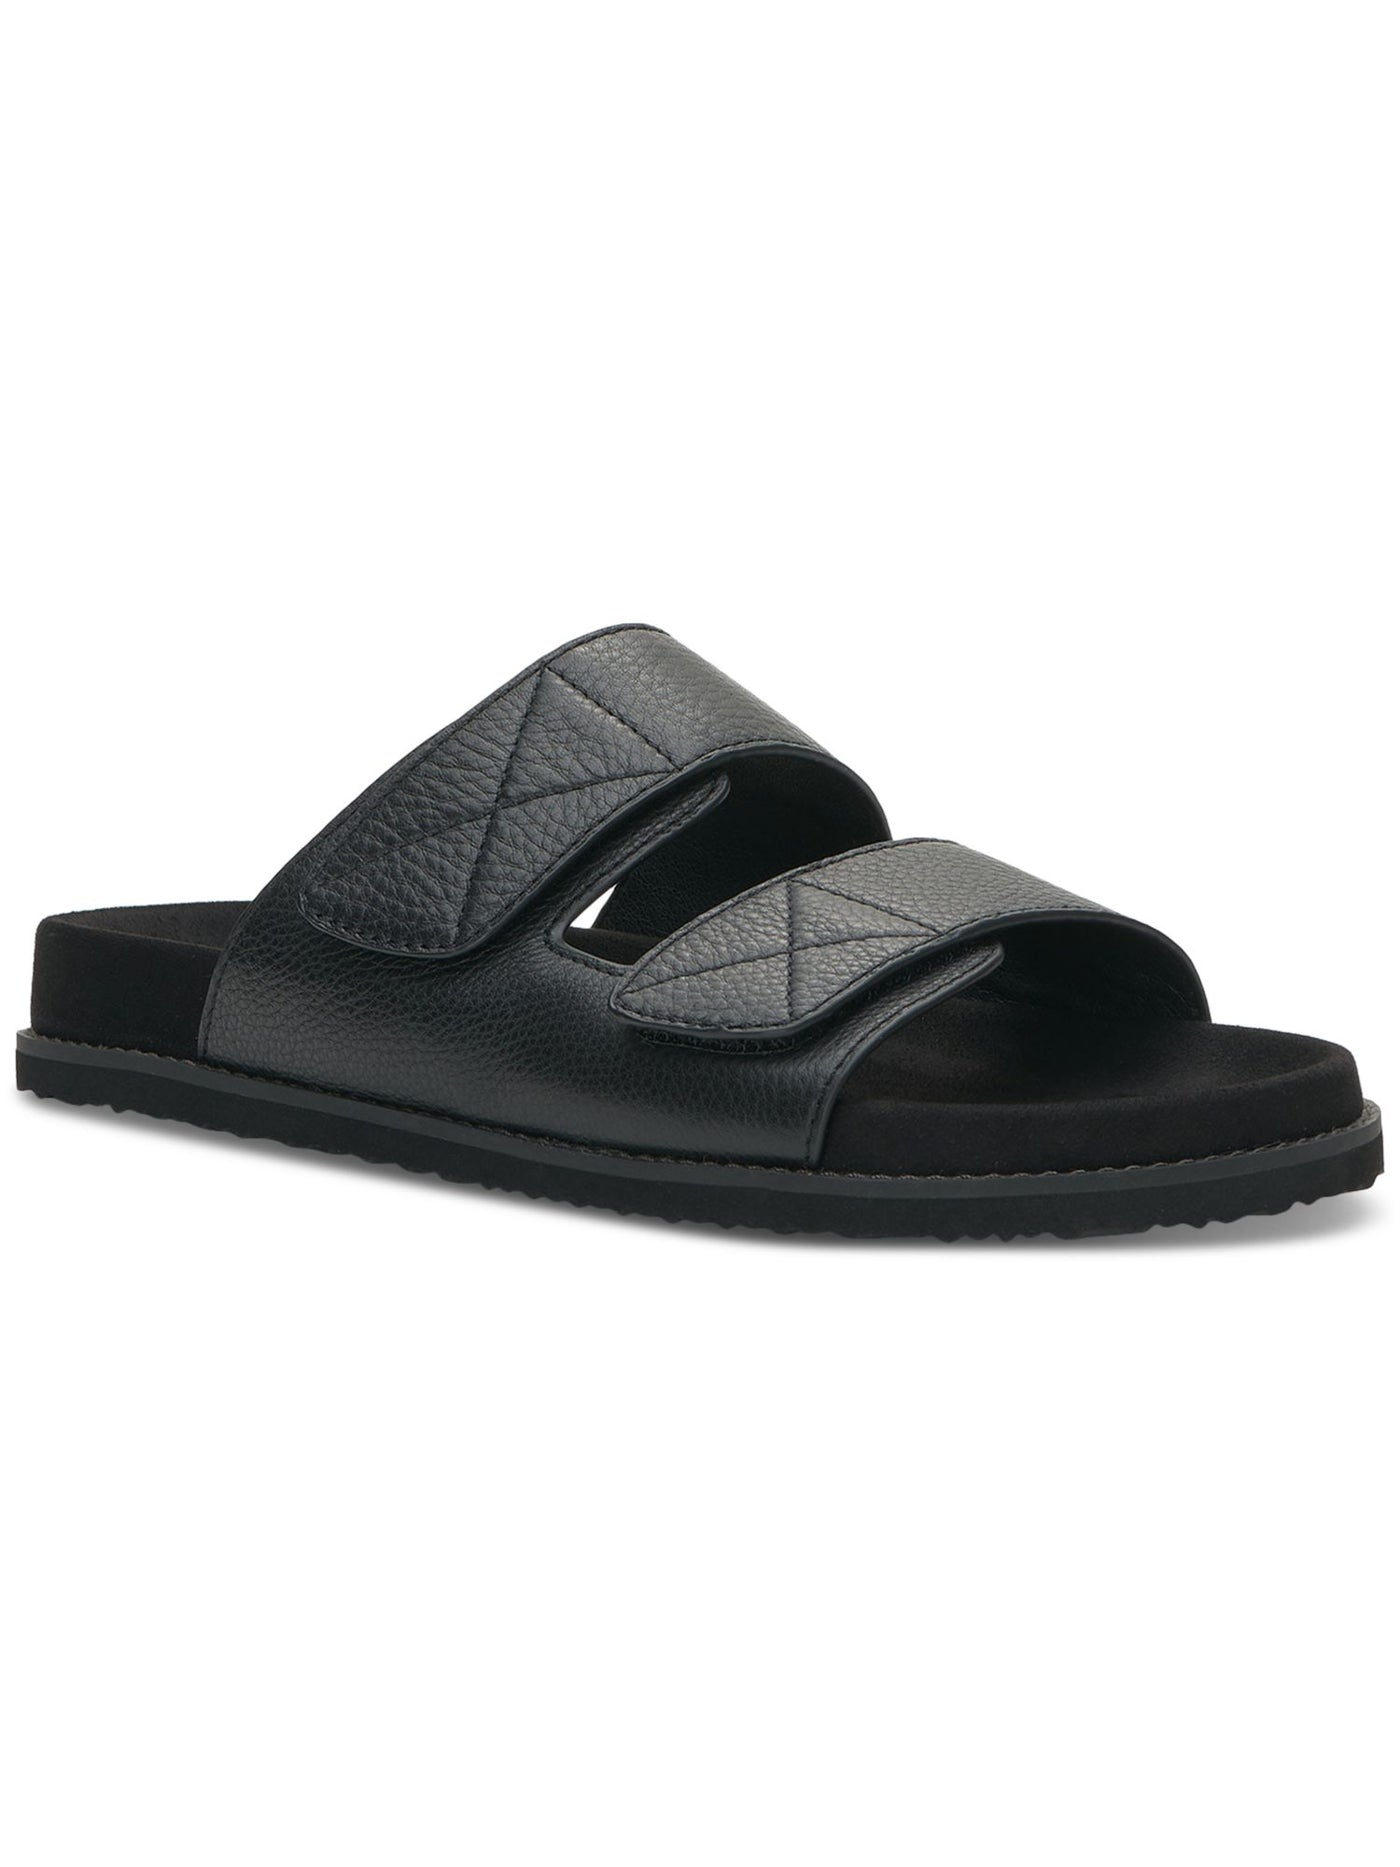 VINCE CAMUTO Mens Black Adjustable Gohan Round Toe Leather Slide Sandals Shoes 13 M